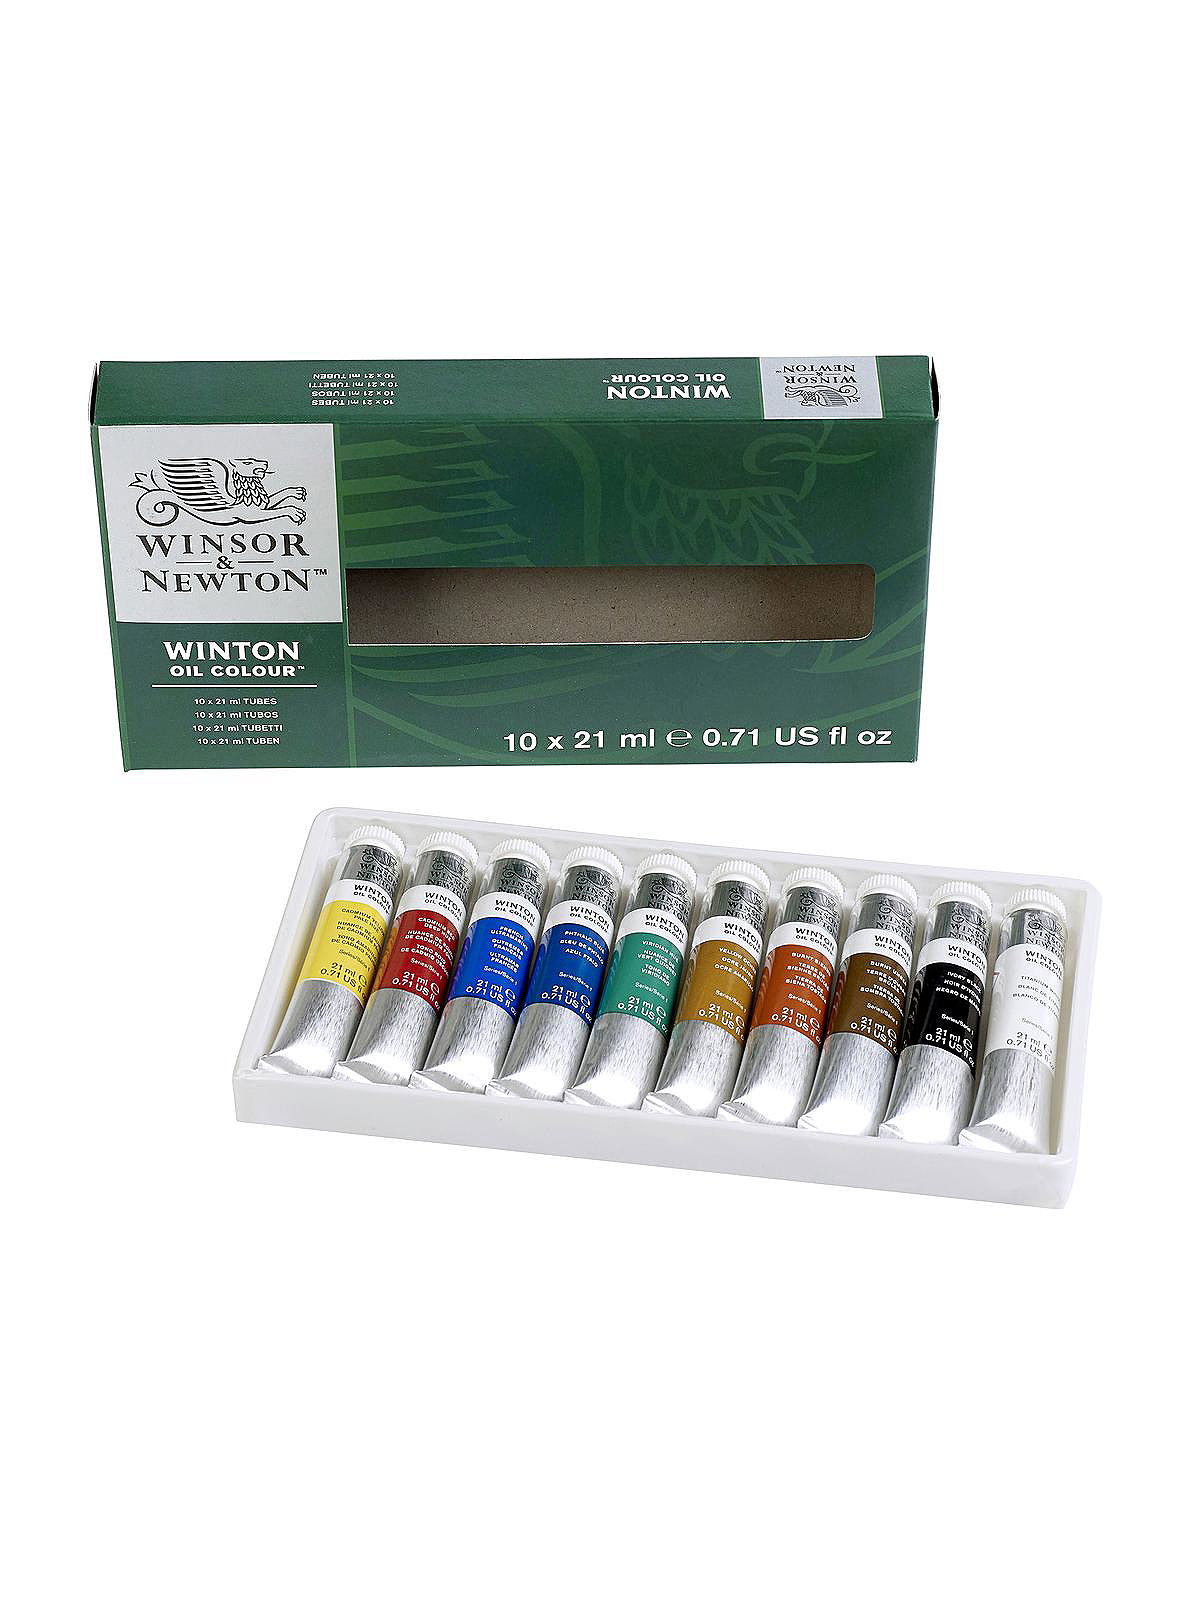 Oil Paint: Winsor & Newton Winton Oil Paint (review)